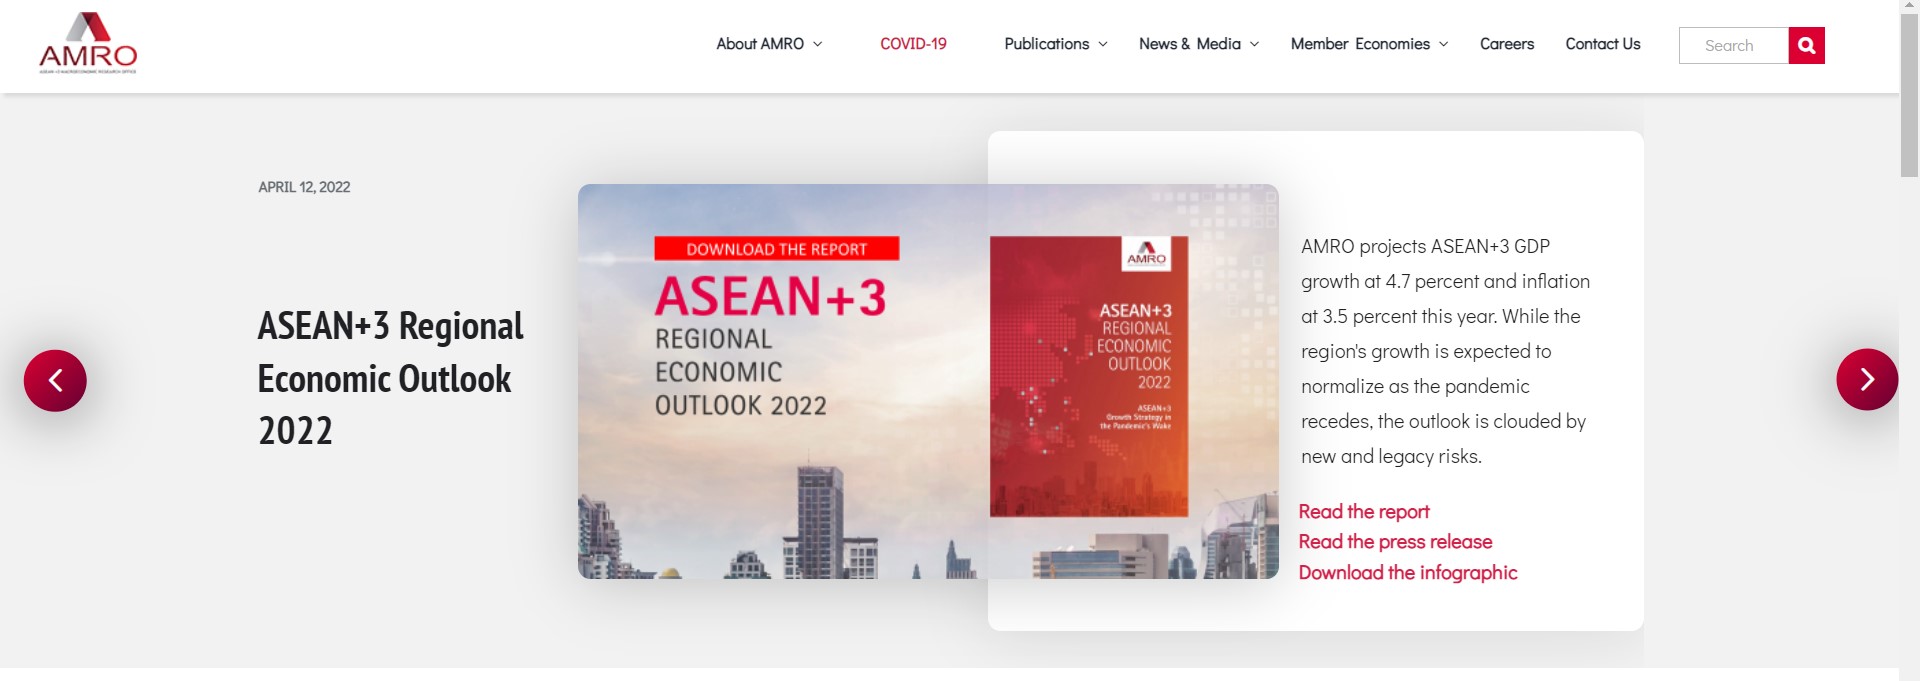 아세안+3 거시경제조사기구(AMRO) 홈페이지